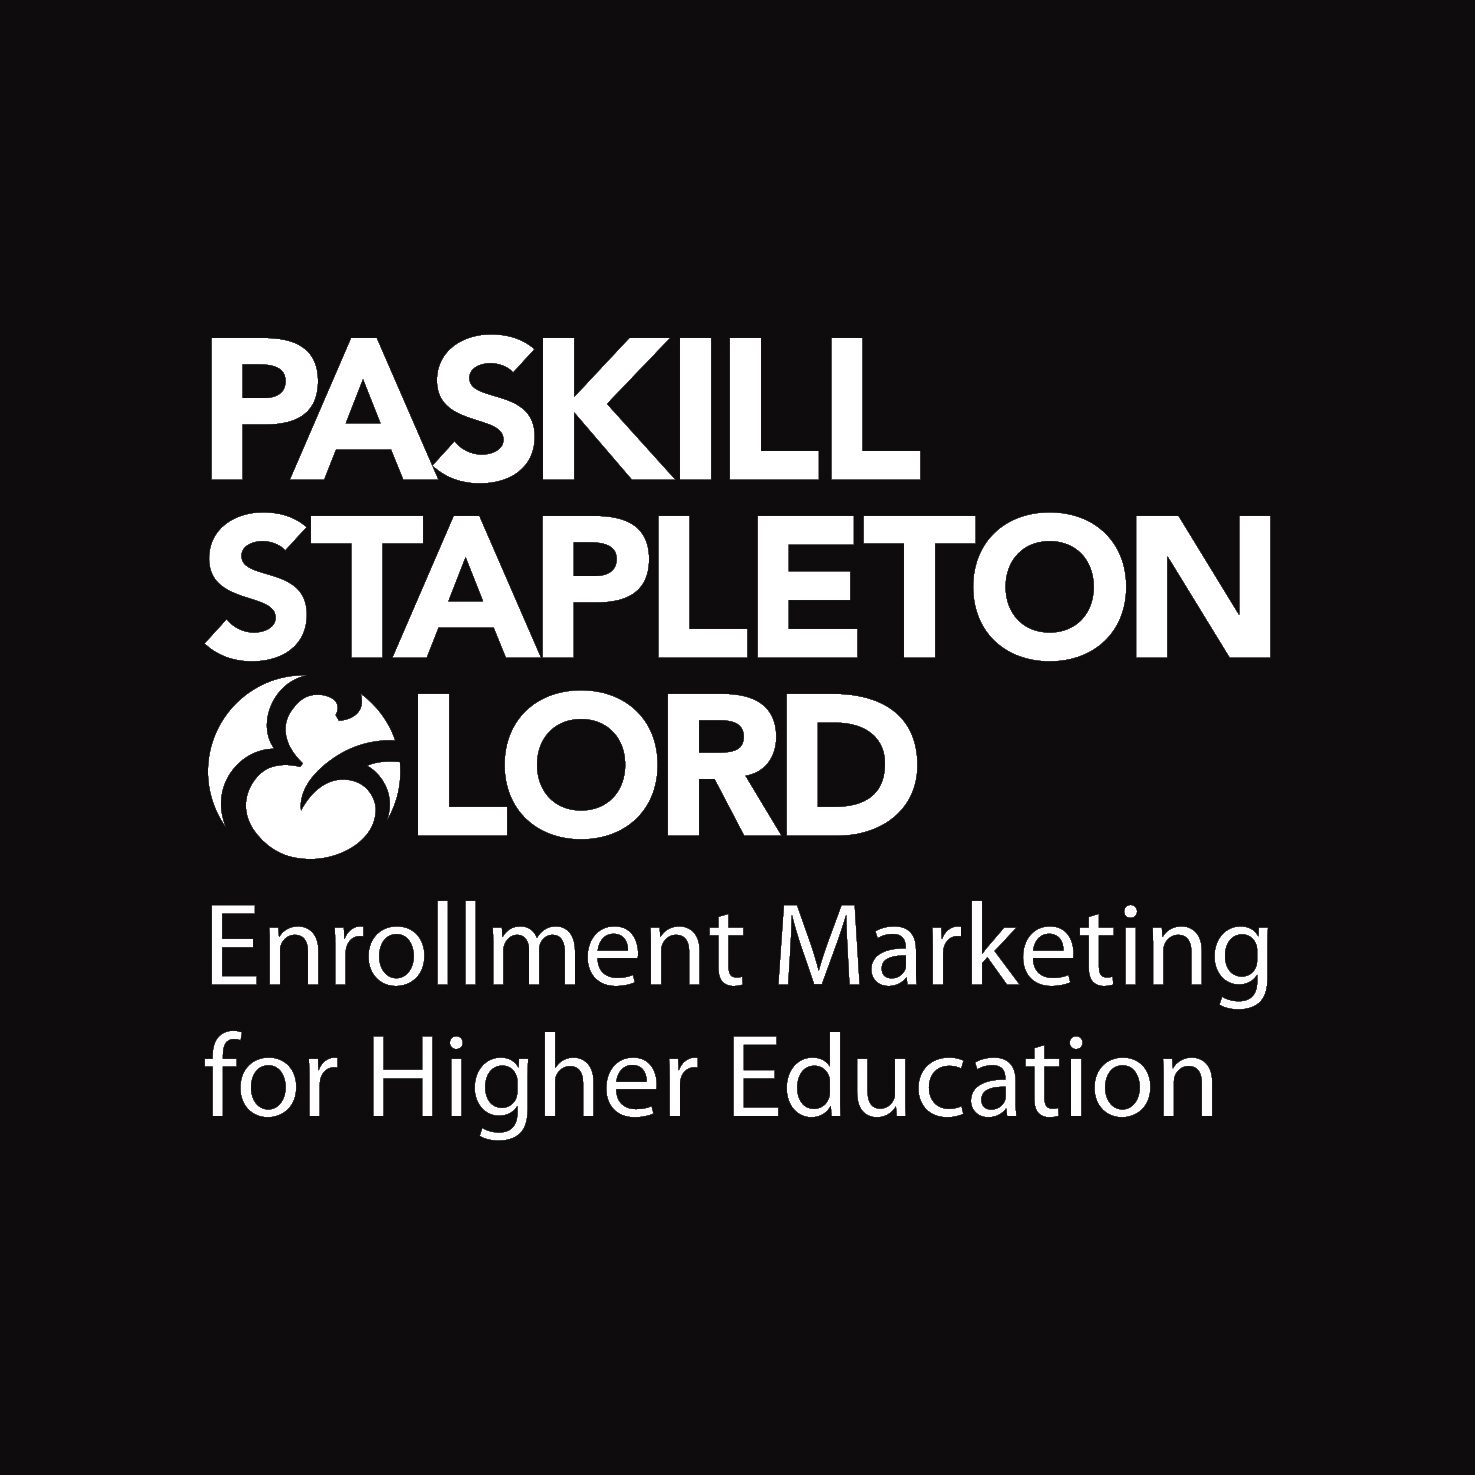 Paskill Stapleton & Lord